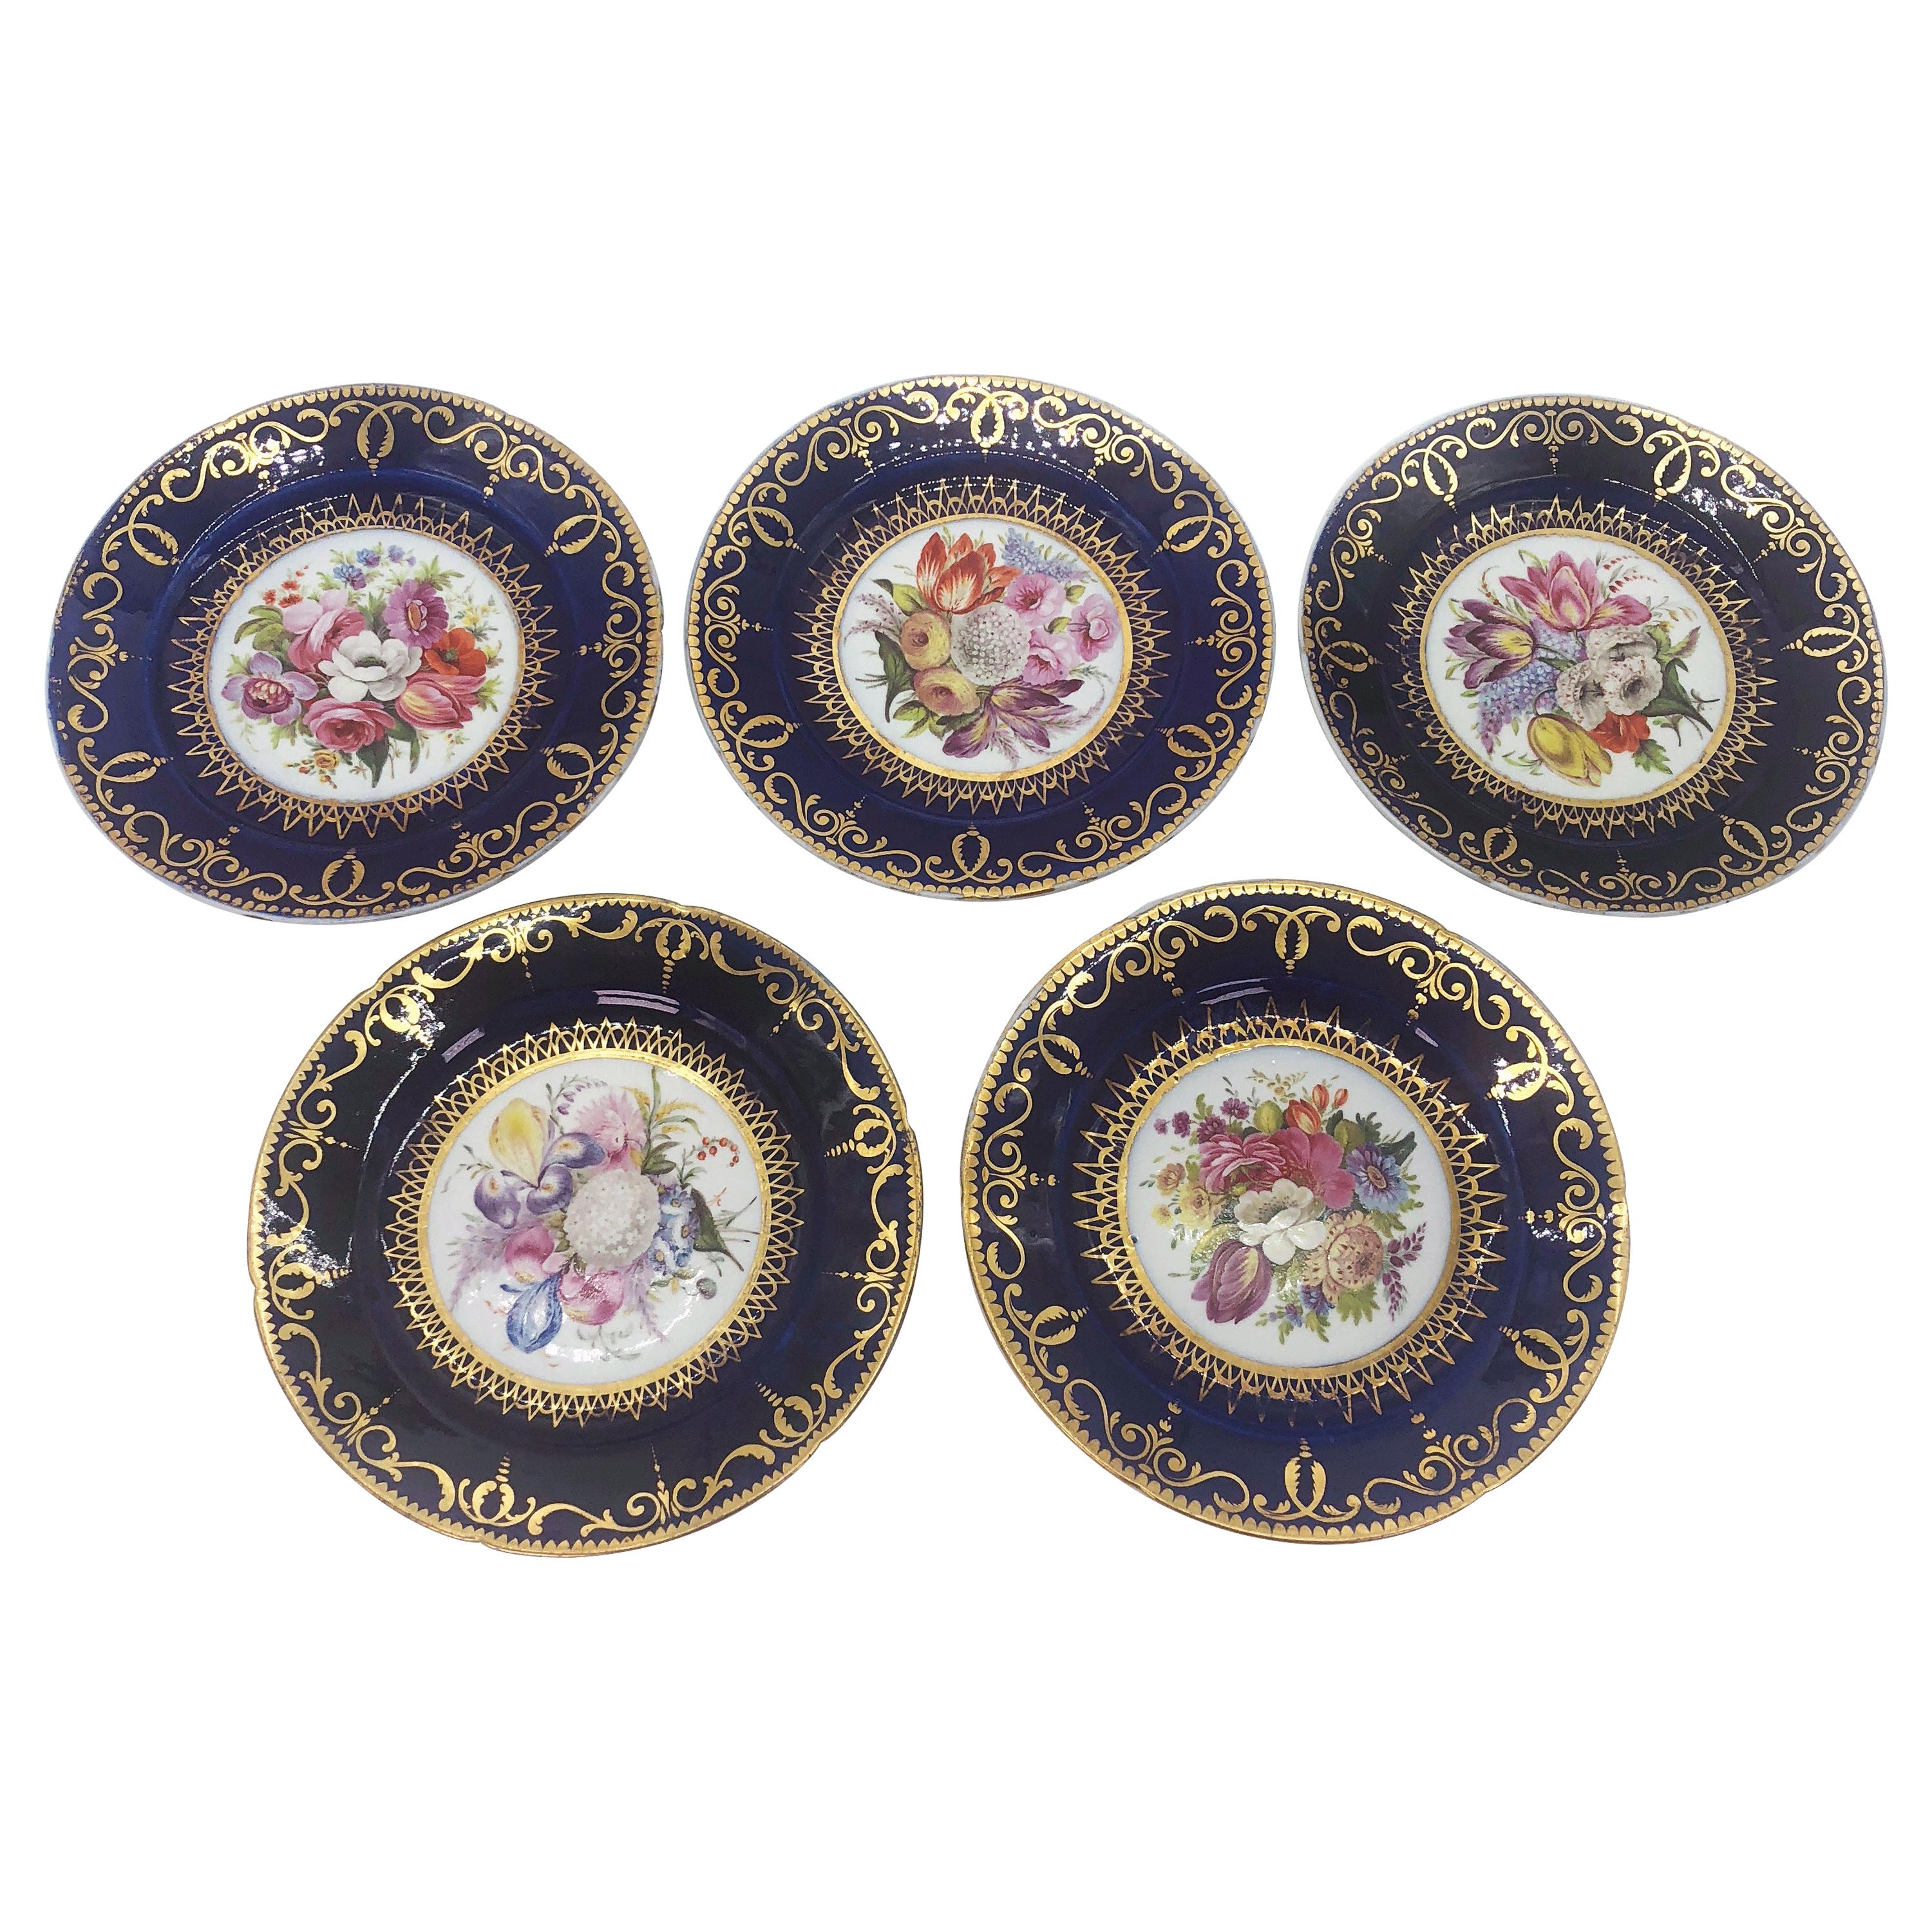 Cinq assiettes en porcelaine de style Régence peintes à la main par Coalport, vers 1805